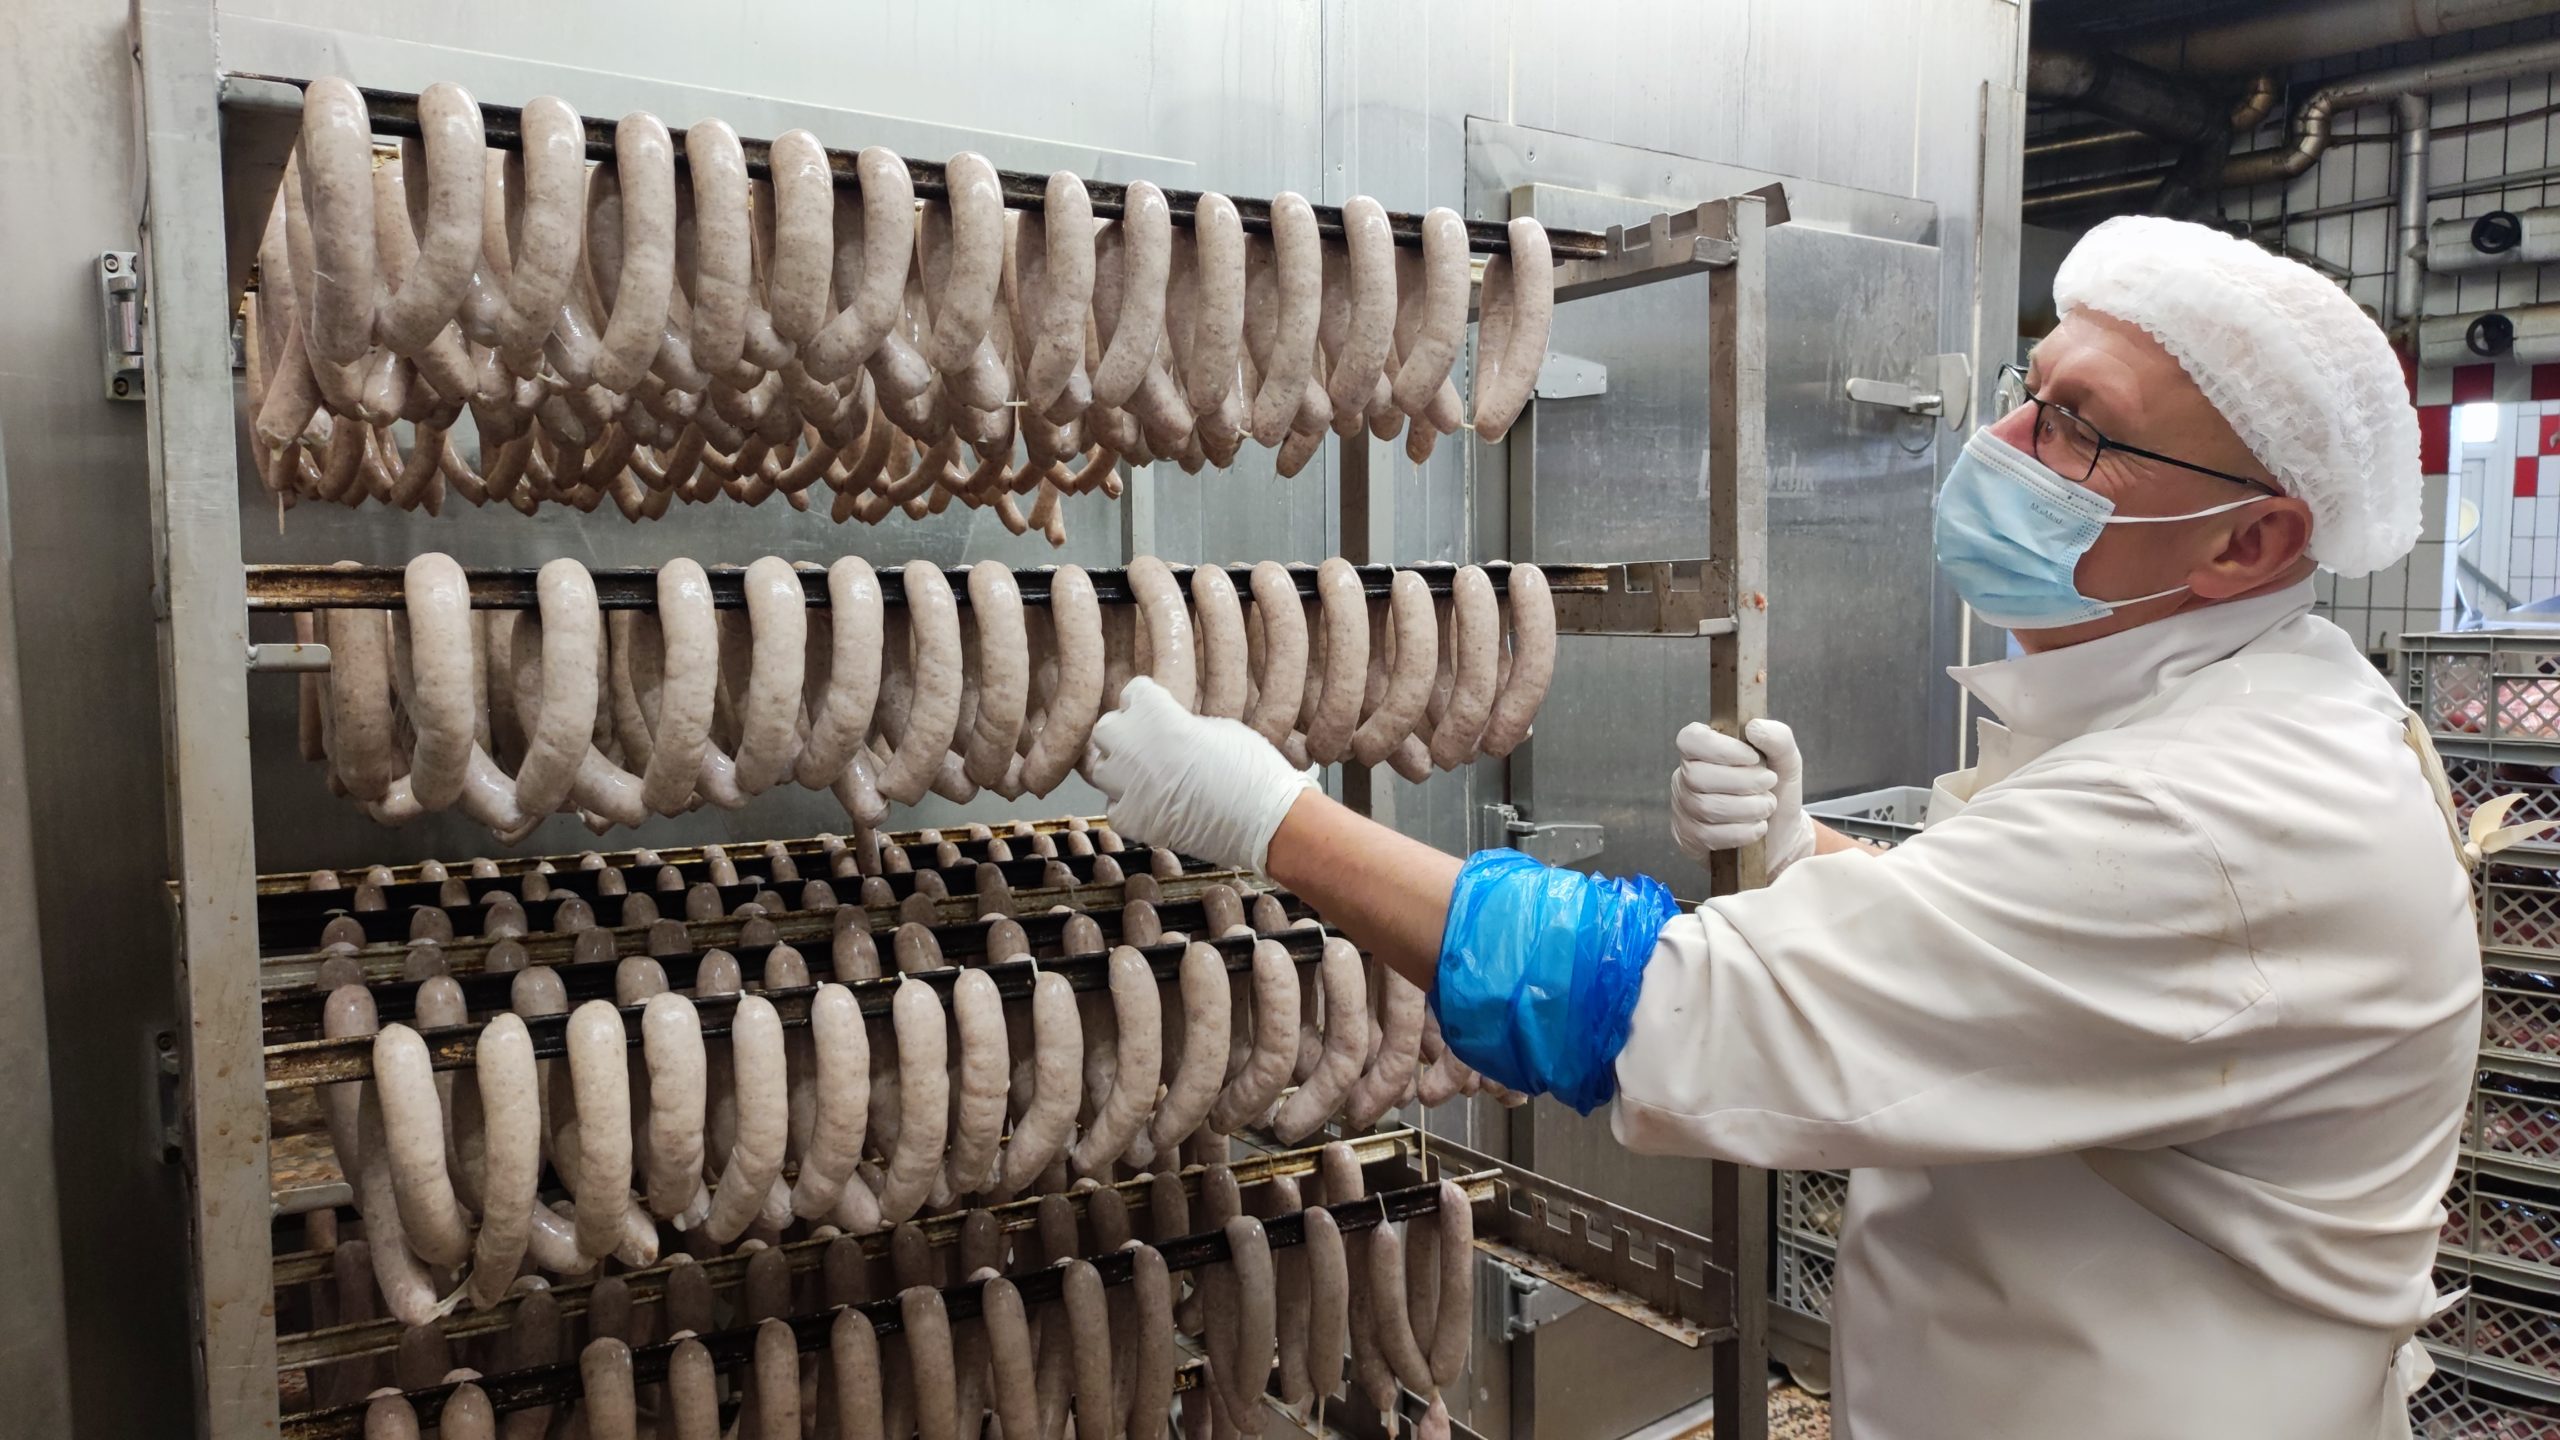 Im Beruf des Fleischers dreht sich vieles um die Wurst. Das Fleisch kommt dabei von Tieren aus der Region. Fotos: Cordes